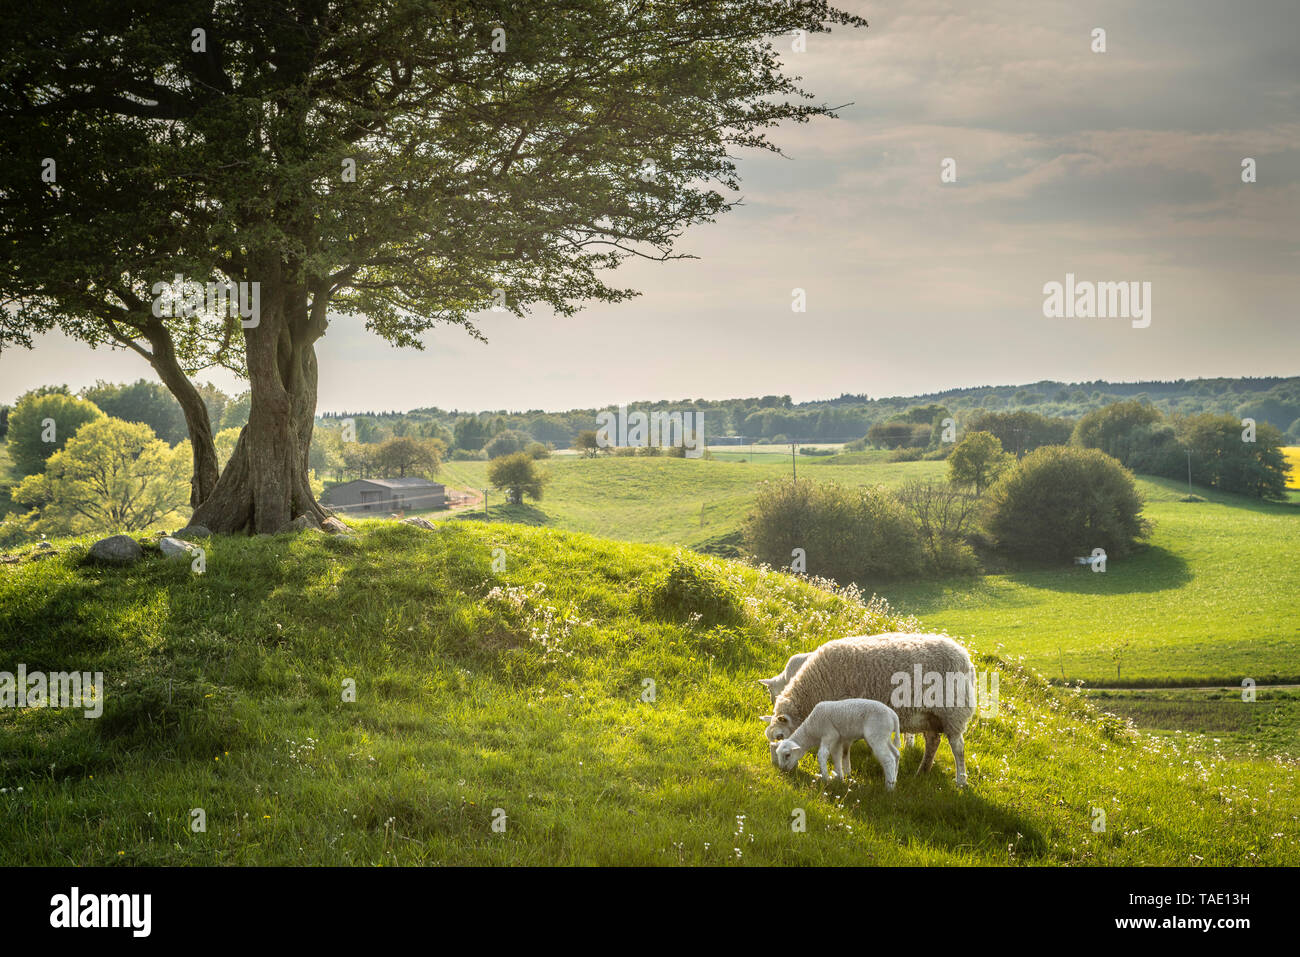 Deux agneaux bébé sous pâturage un arbre isolé au sommet d'une colline dans un paysage rural dans les collines de Rorum dans Osterlen, Skane, Suède, Scandinavie. Banque D'Images